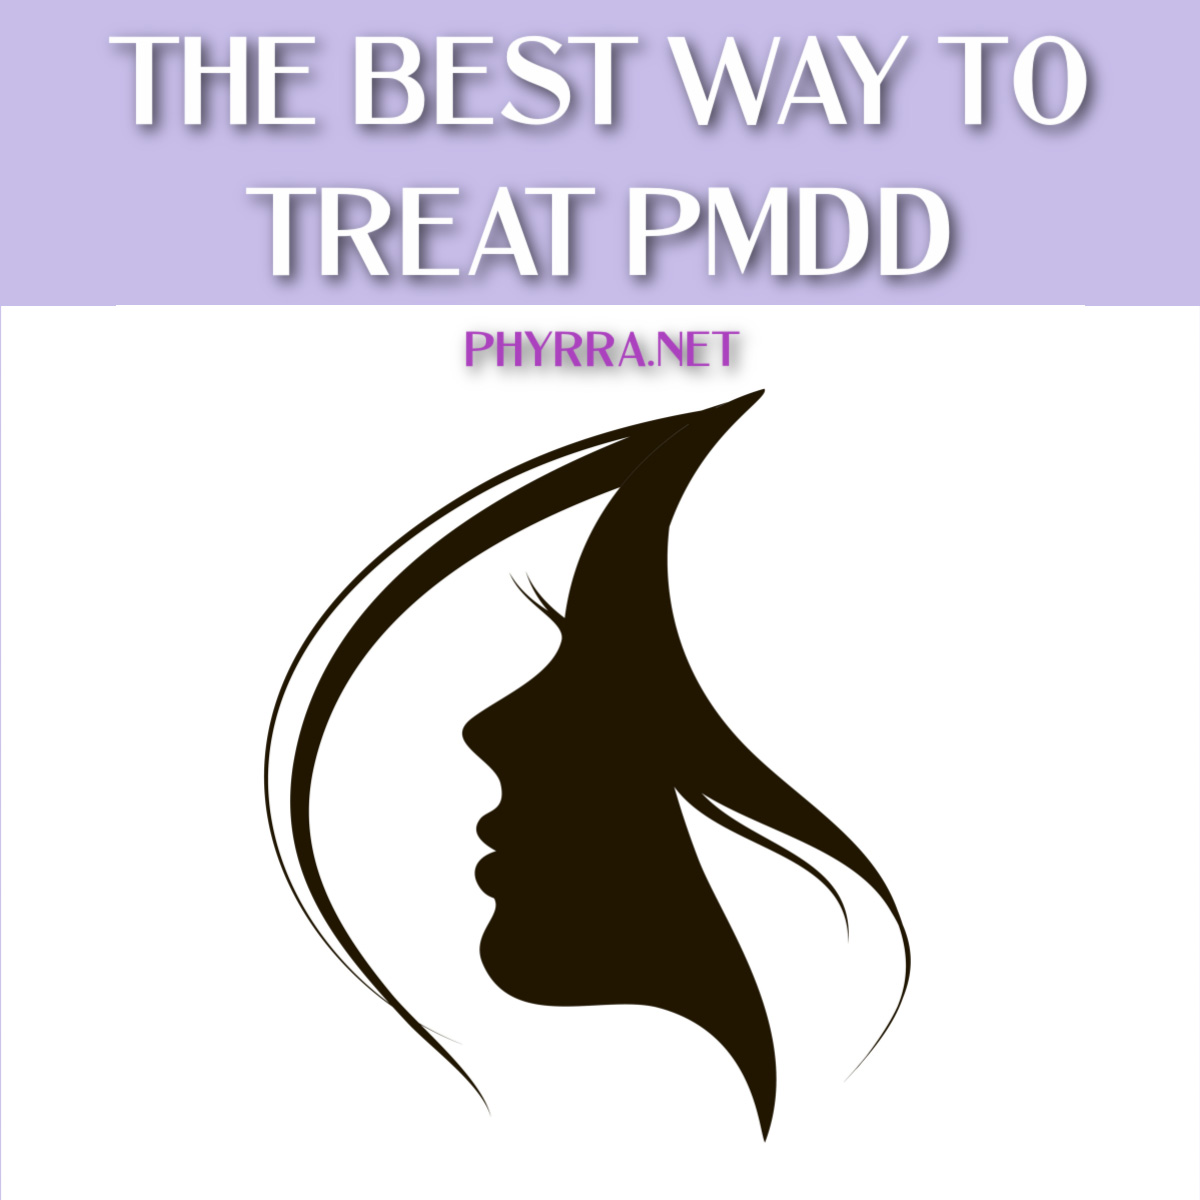 The Best Way to Treat PMDD